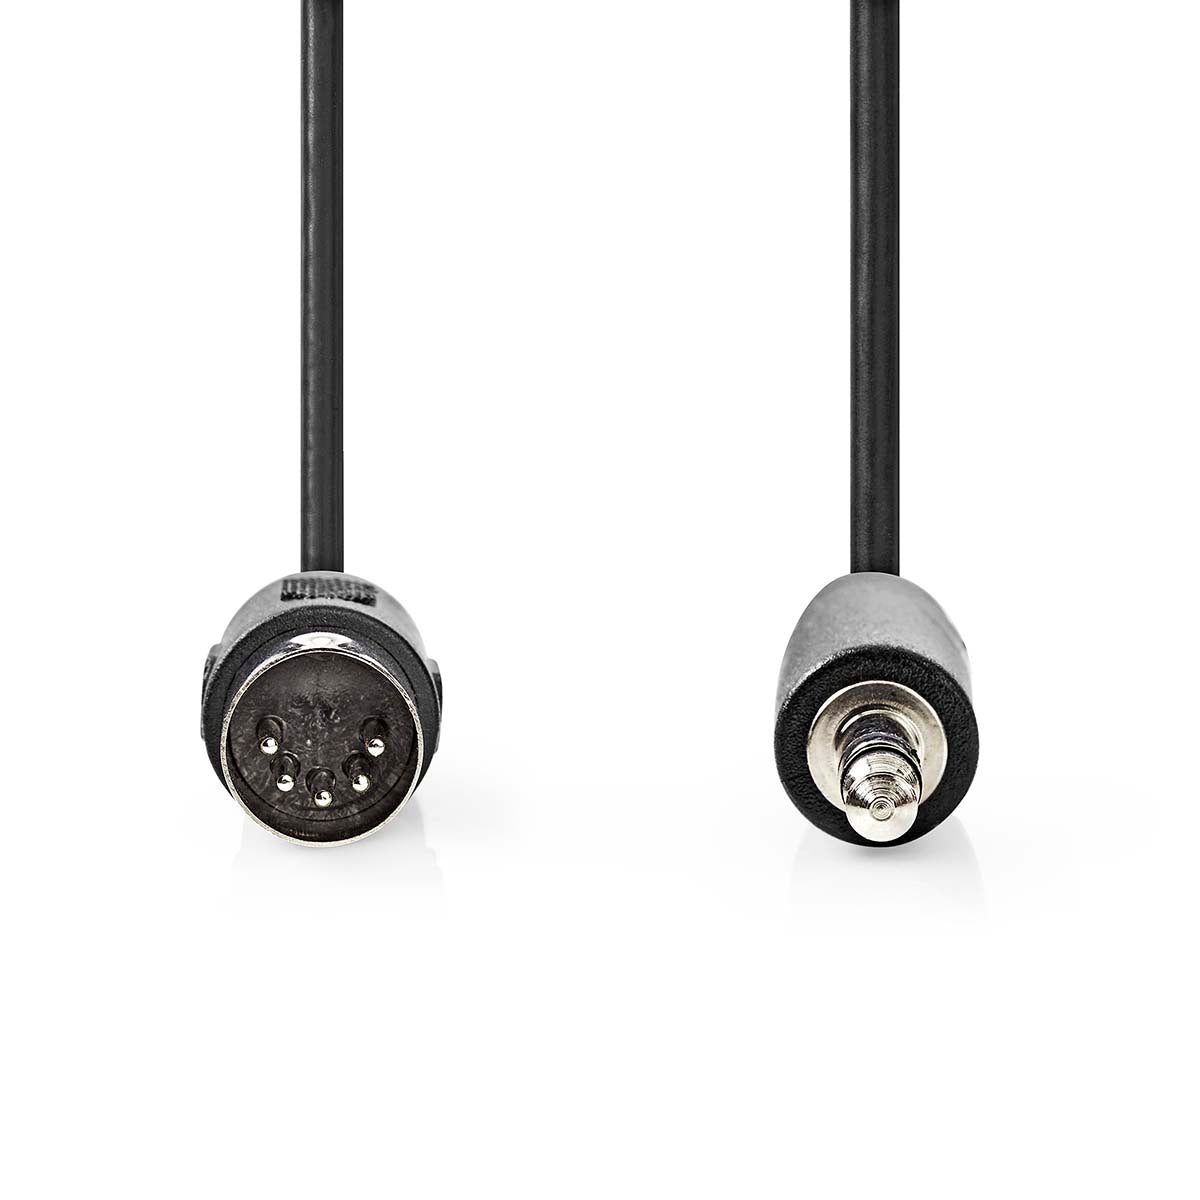 DIN-Audio-Kabel | DIN 5-Pin Stecker | 3.5 mm Stecker | Vernickelt | 1.00 m | Rund | PVC | Schwarz | Umschlag